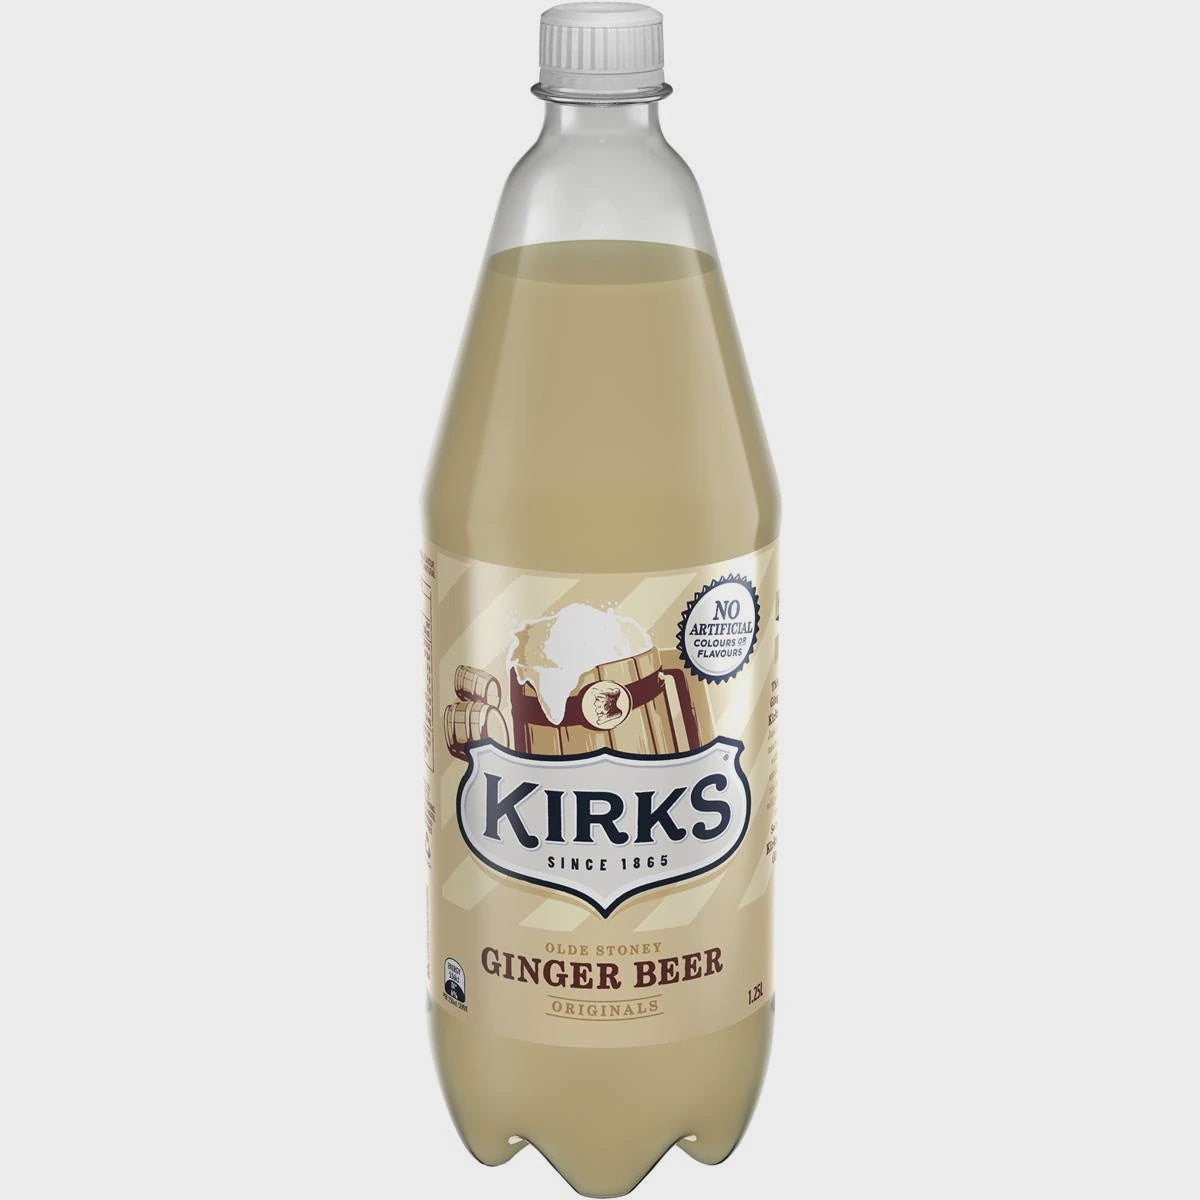 Kirks Olde Stoney Ginger Beer Bottle 1.25L